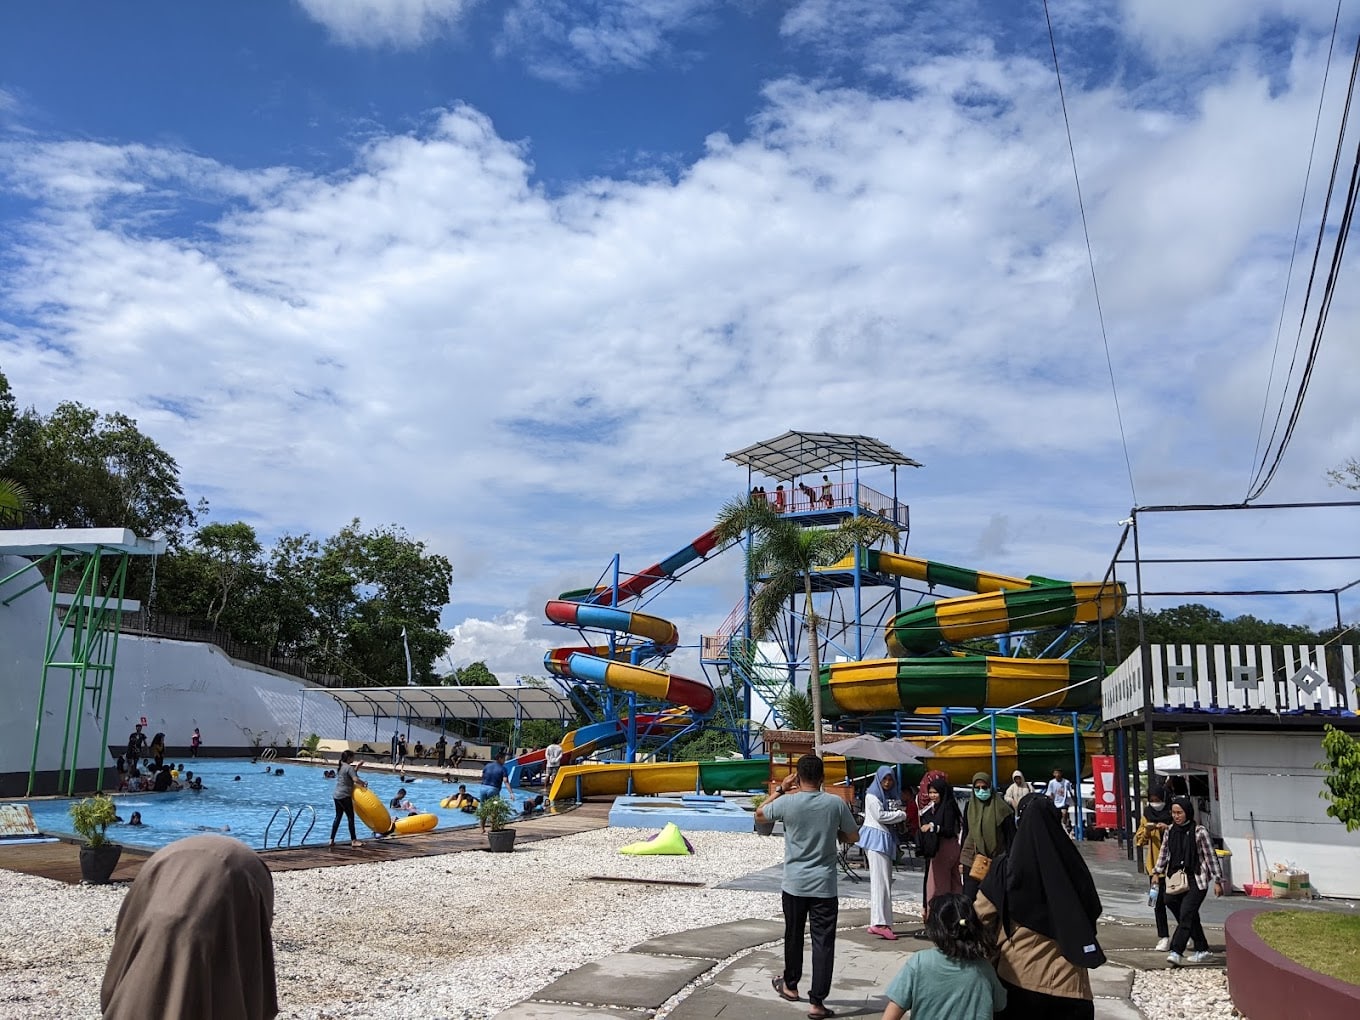 Bukit Bintang Park and Resort